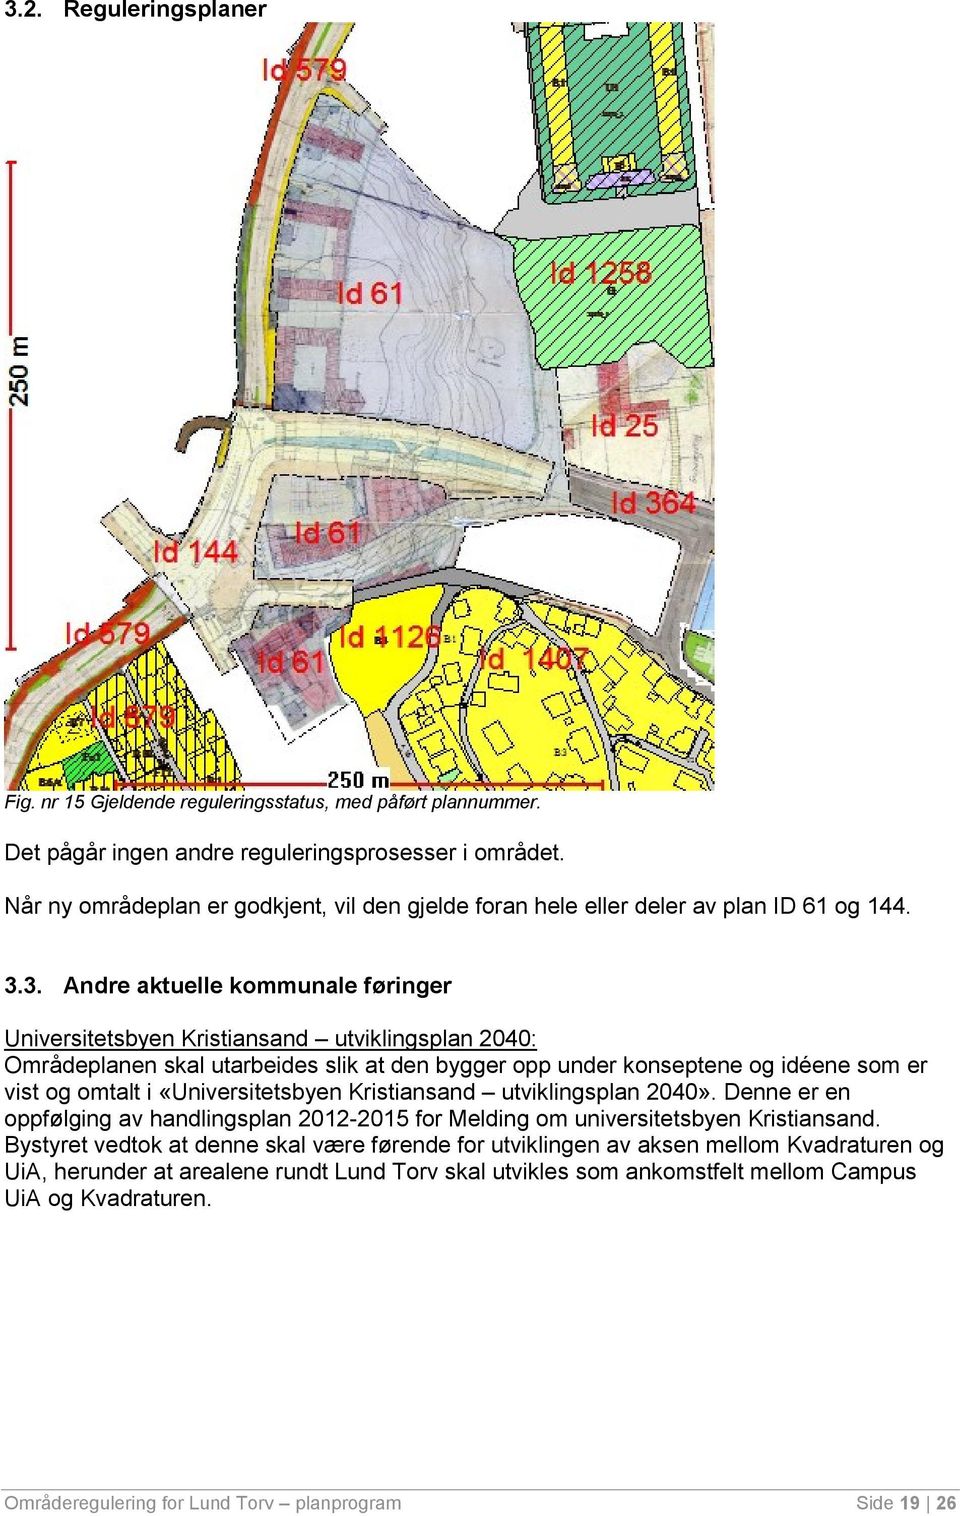 3. Andre aktuelle kommunale føringer Universitetsbyen Kristiansand utviklingsplan 2040: Områdeplanen skal utarbeides slik at den bygger opp under konseptene og idéene som er vist og omtalt i